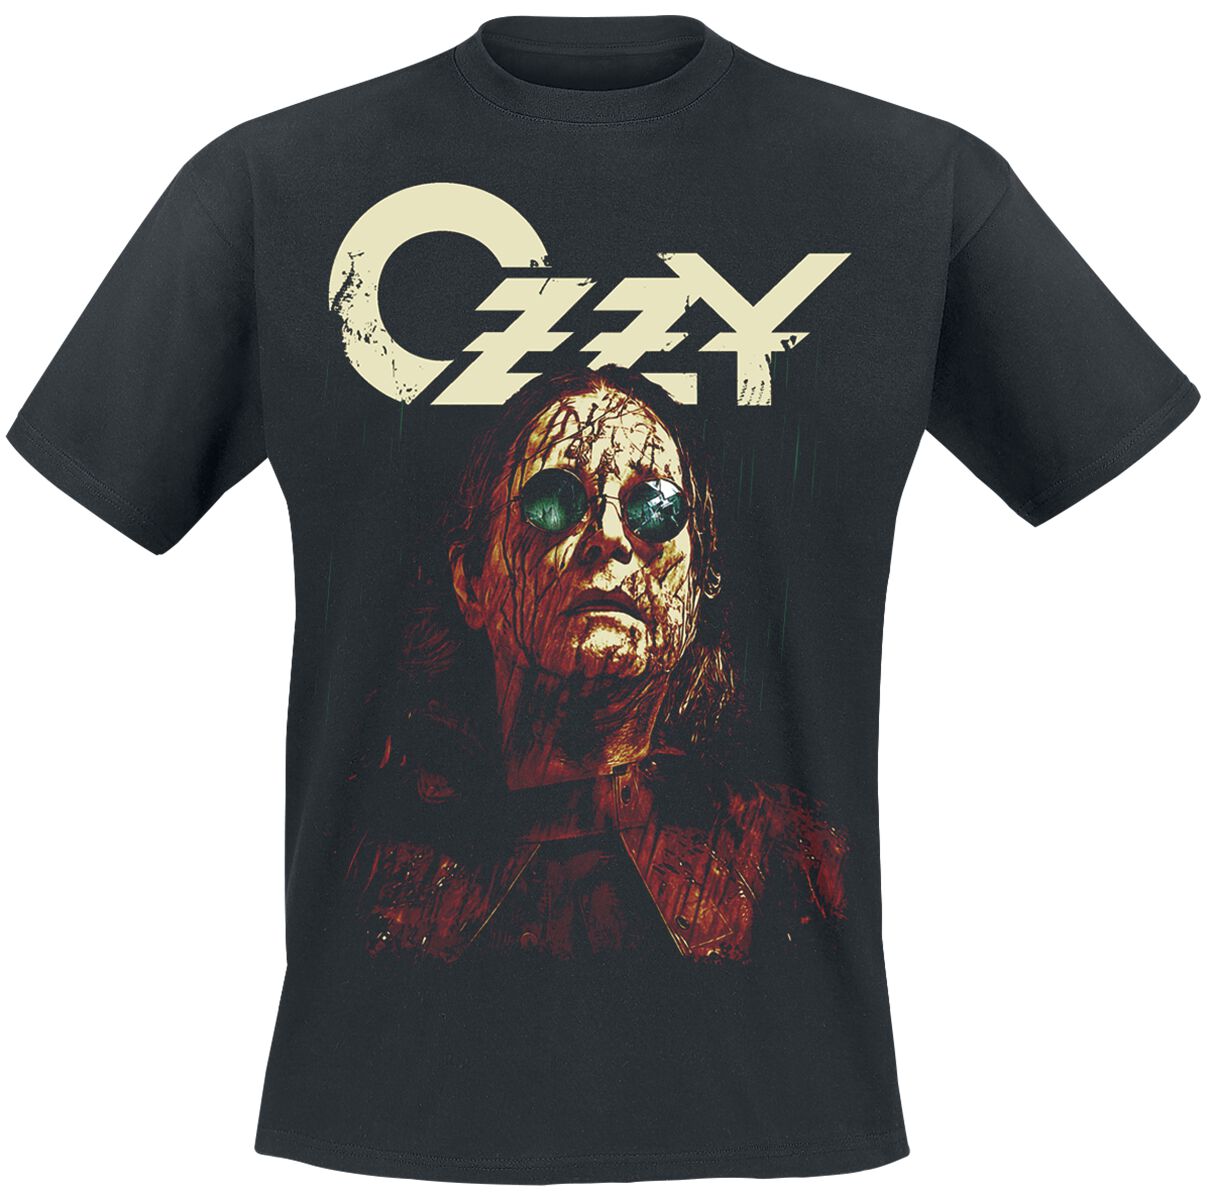 Ozzy Osbourne T-Shirt - Black rain - S bis L - für Männer - Größe M - schwarz  - Lizenziertes Merchandise!